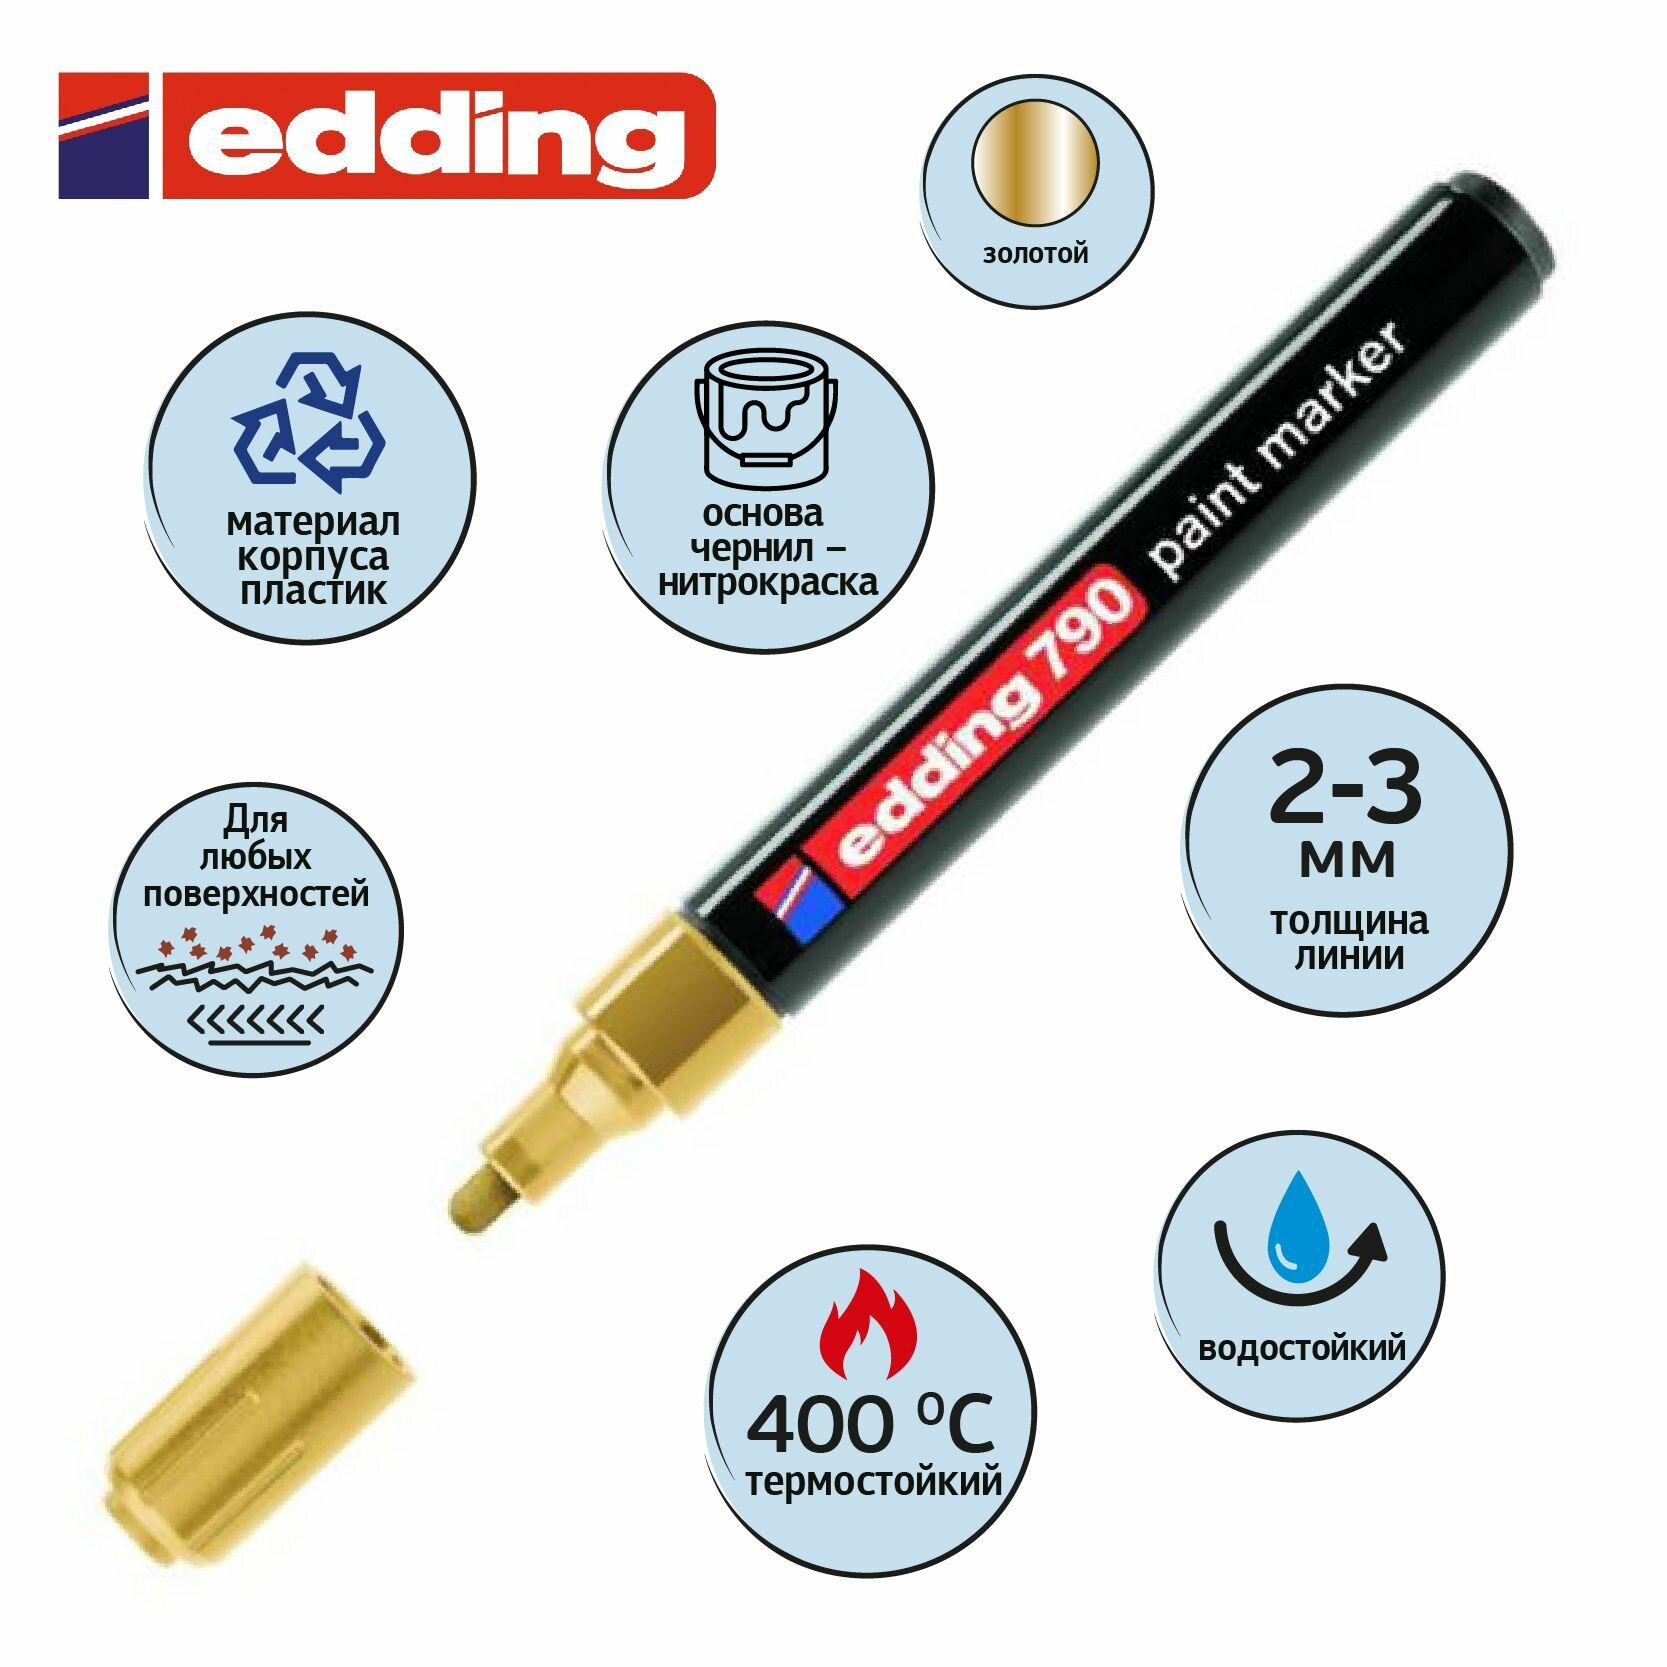 Маркер краска Edding E-790/53, лаковый, 2-3 мм, золотой